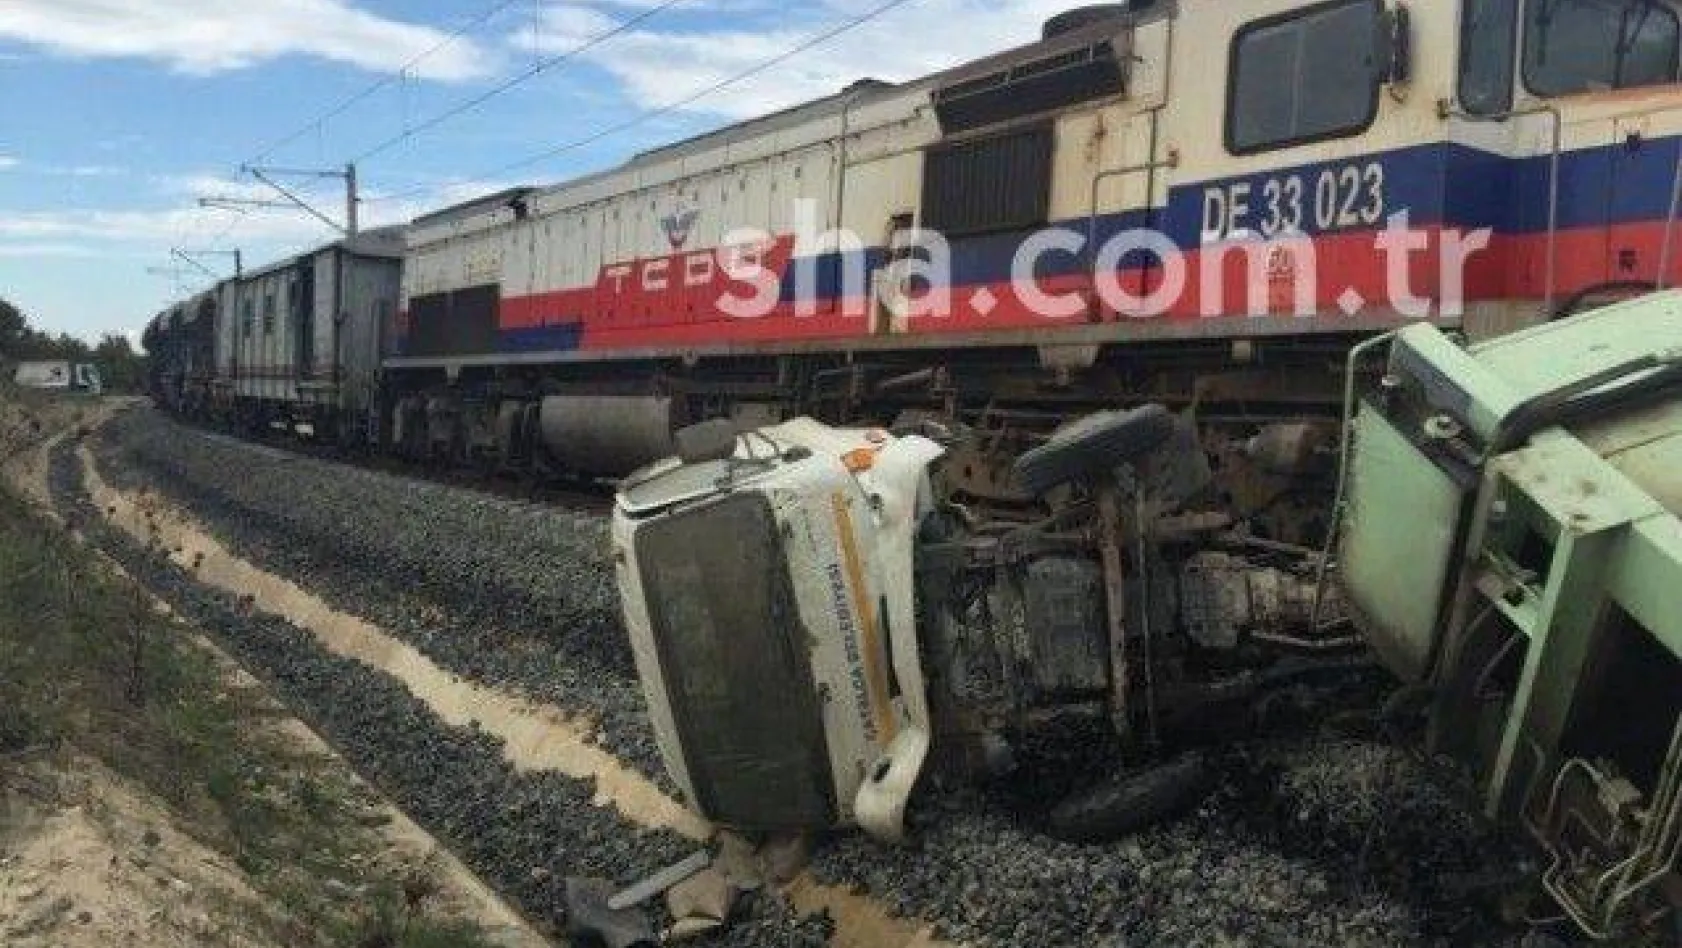 Beyciler'deki tren kazası ucuz atlatıldı